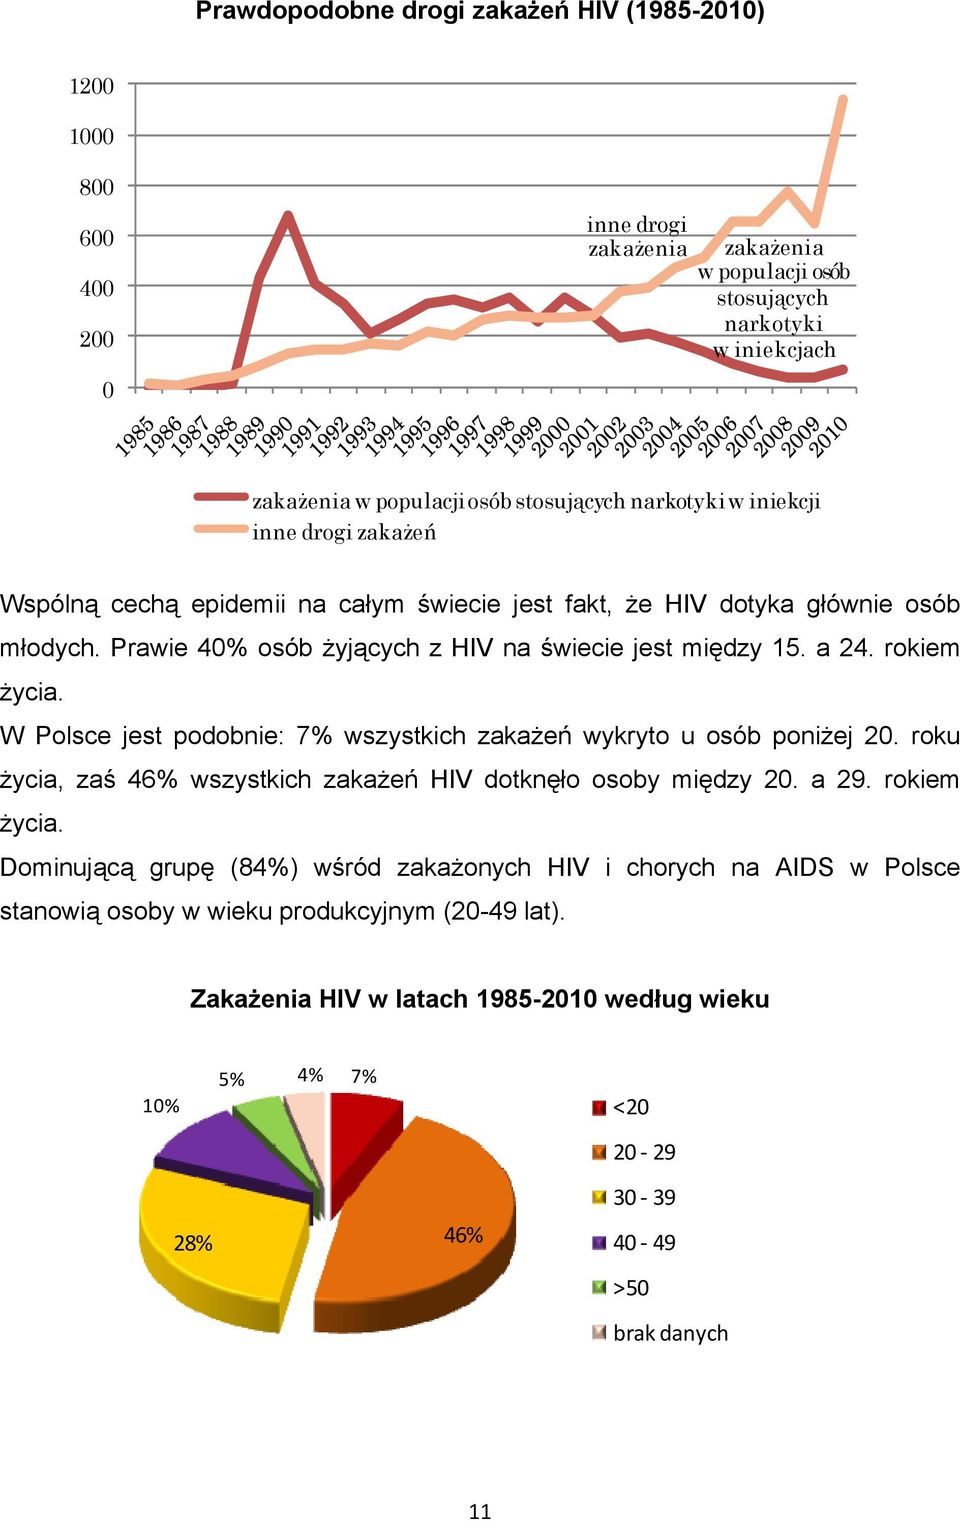 rokiem życia. W Polsce jest podobnie: 7% wszystkich zakażeń wykryto u osób poniżej 20. roku życia, zaś 46% wszystkich zakażeń HIV dotknęło osoby między 20. a 29. rokiem życia.